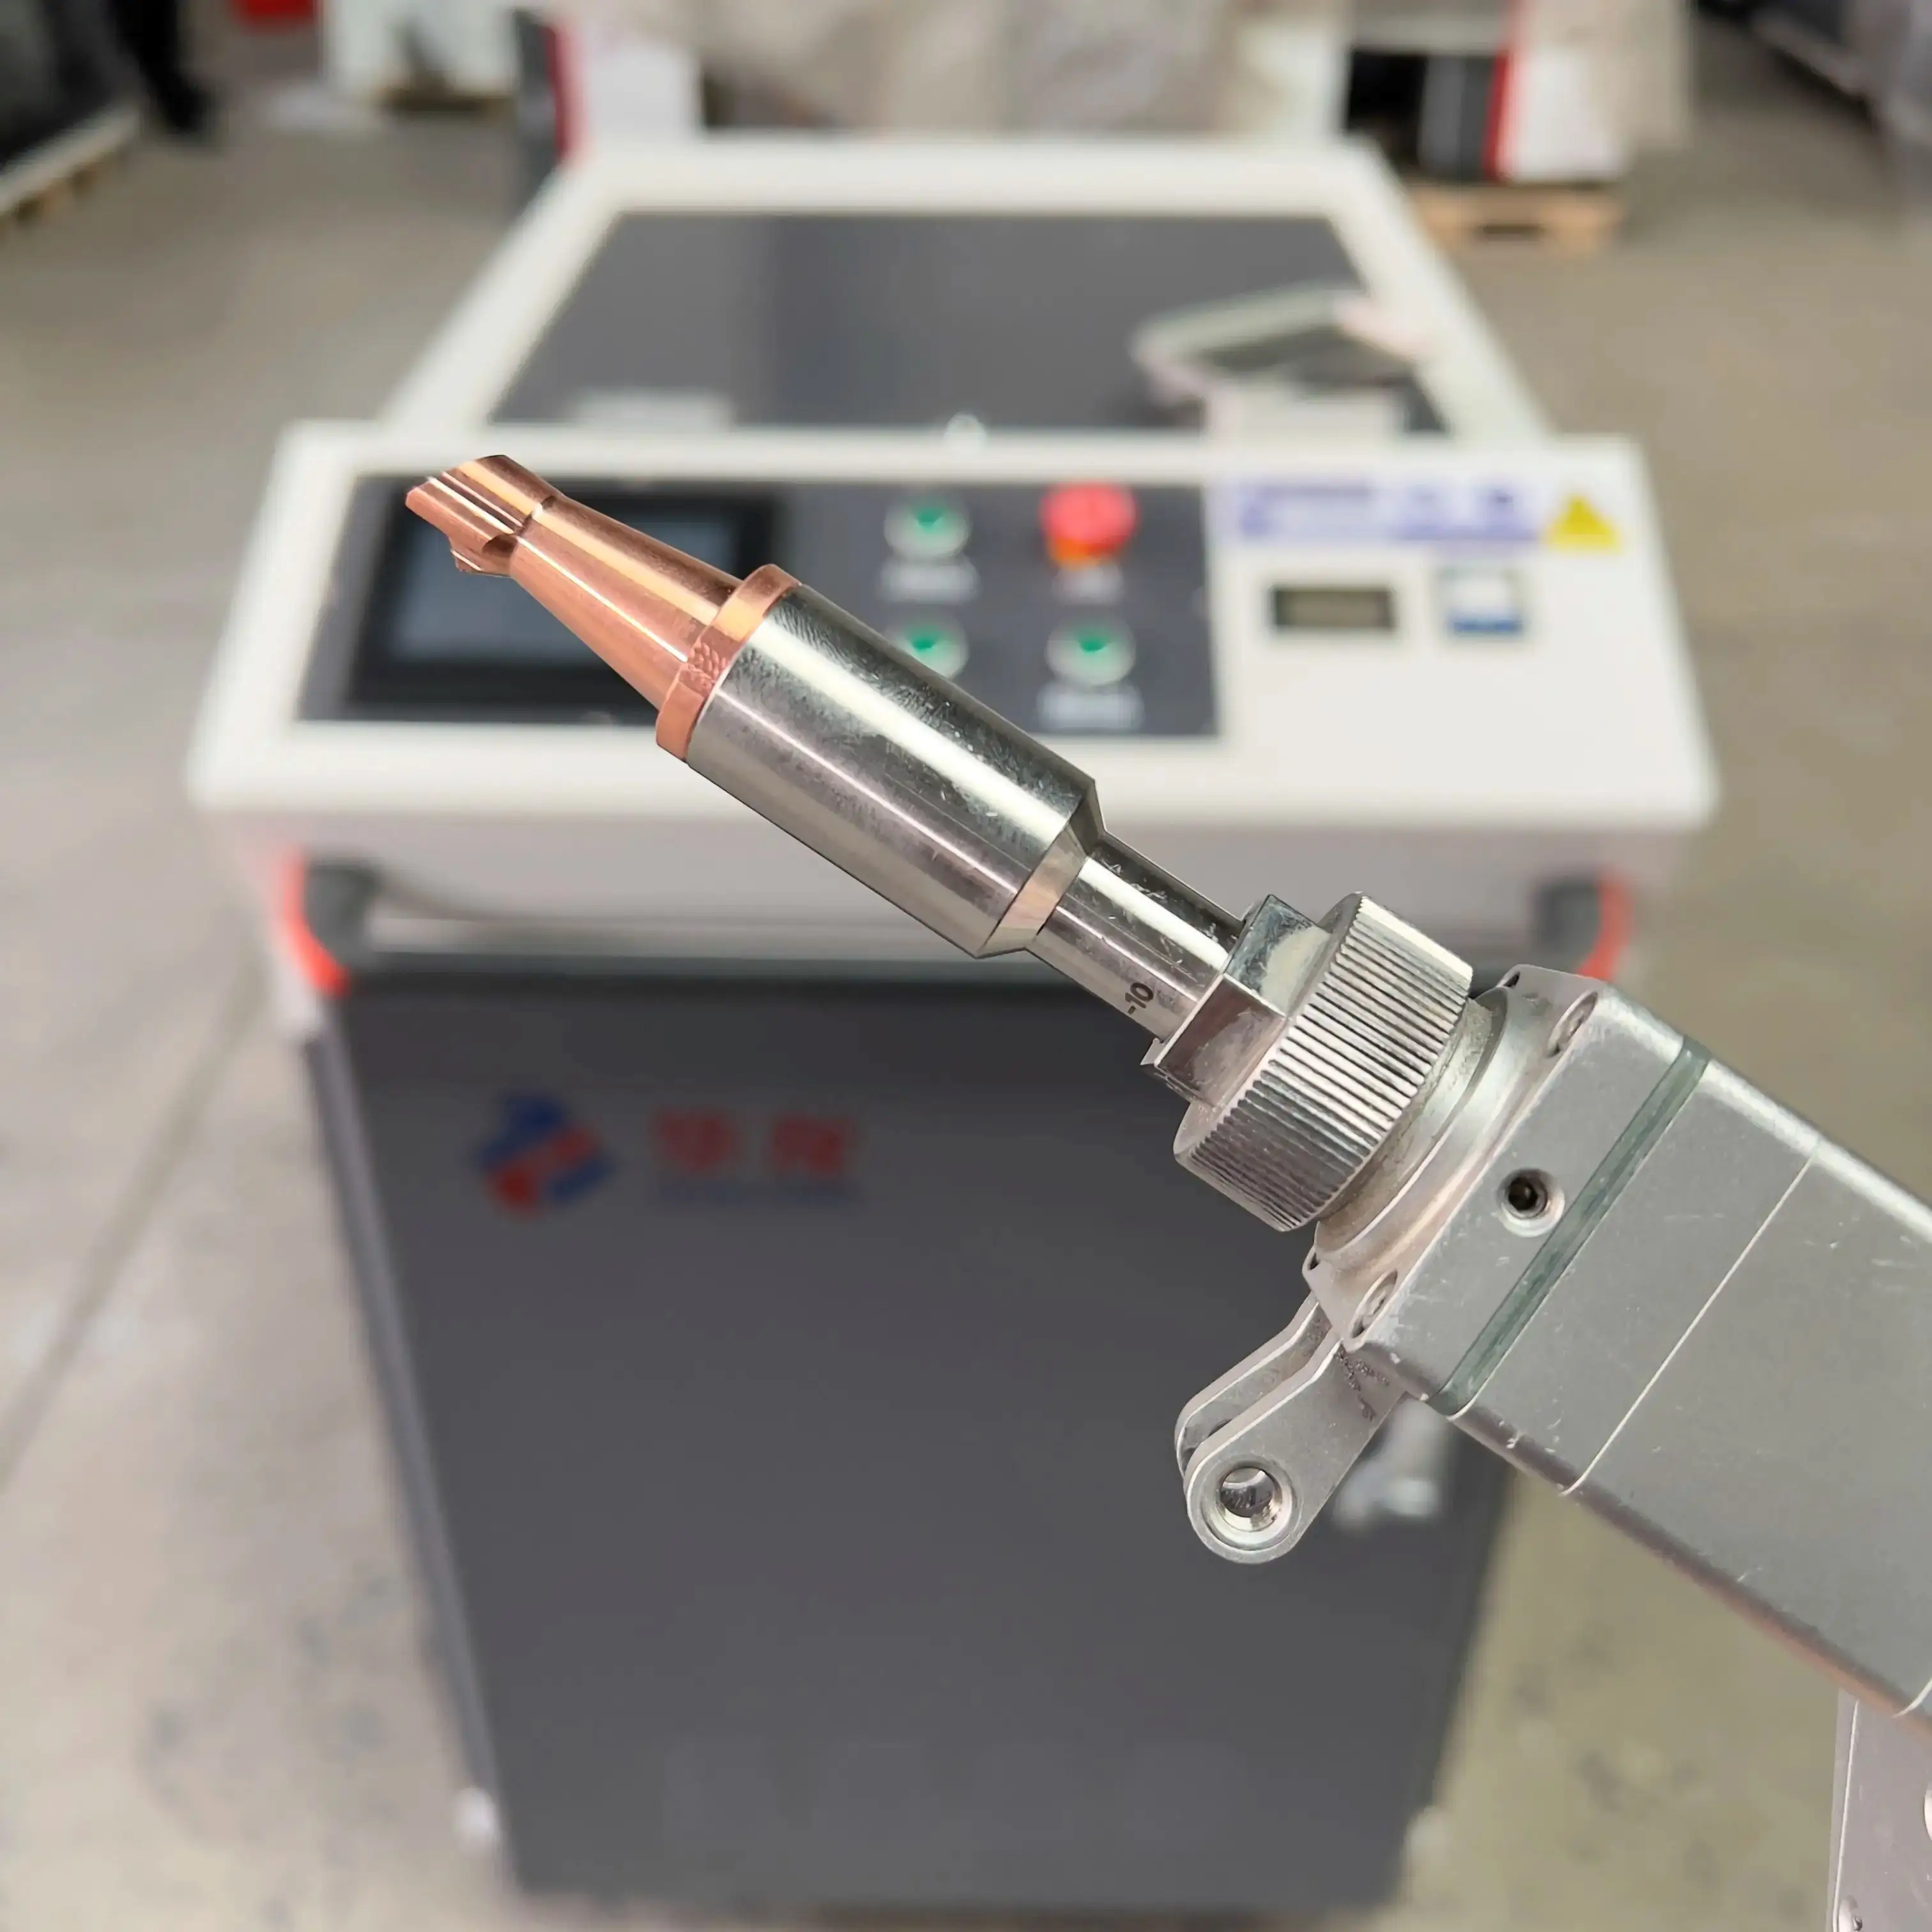 MAX Lazer Welding Machine Handheld Price CNC Fiber metal welding laser machine Tin welding machine